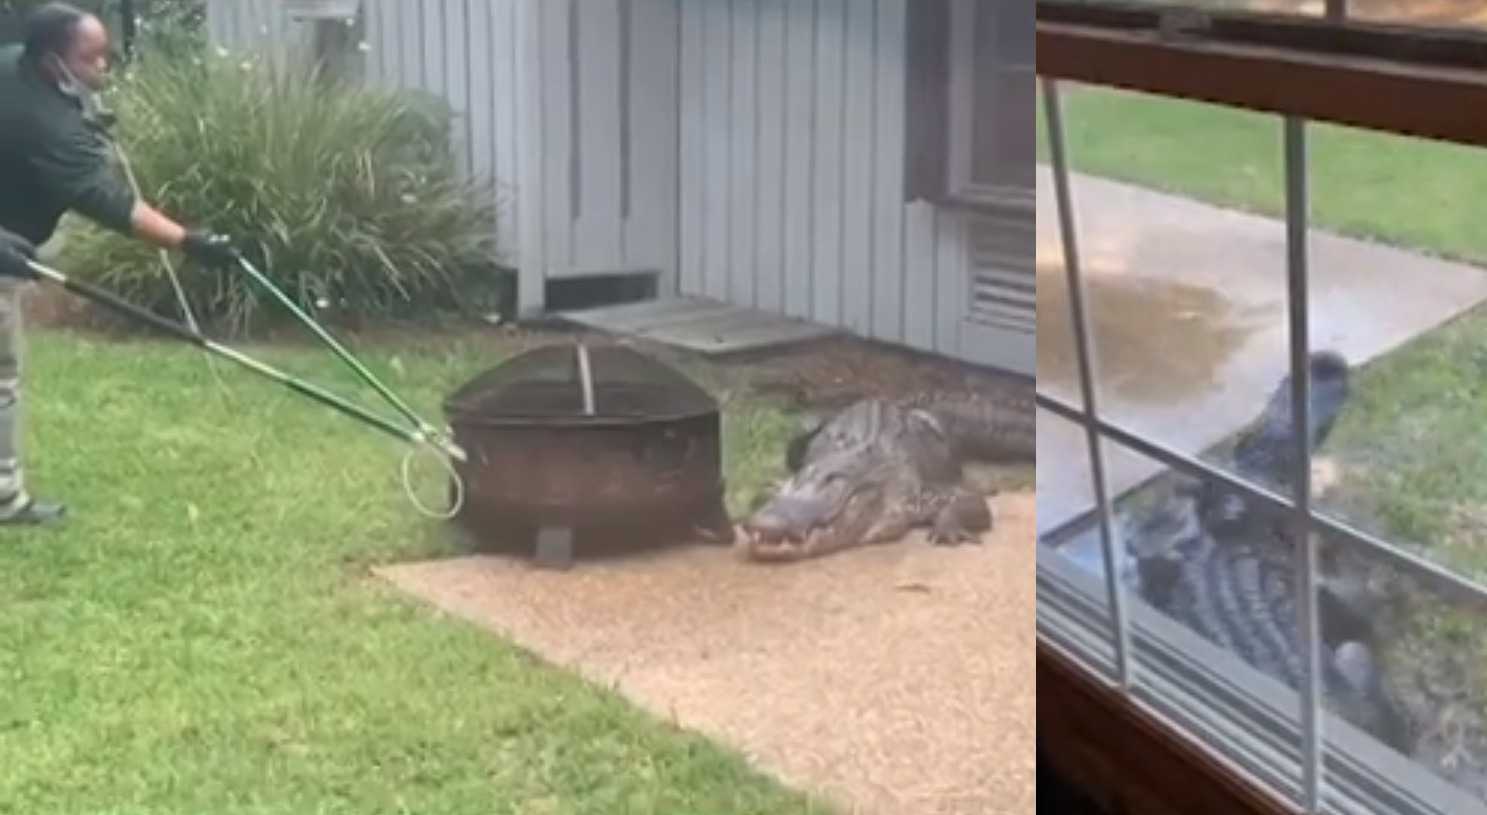 WHOA! Security guards wrangle disruptive gator named 